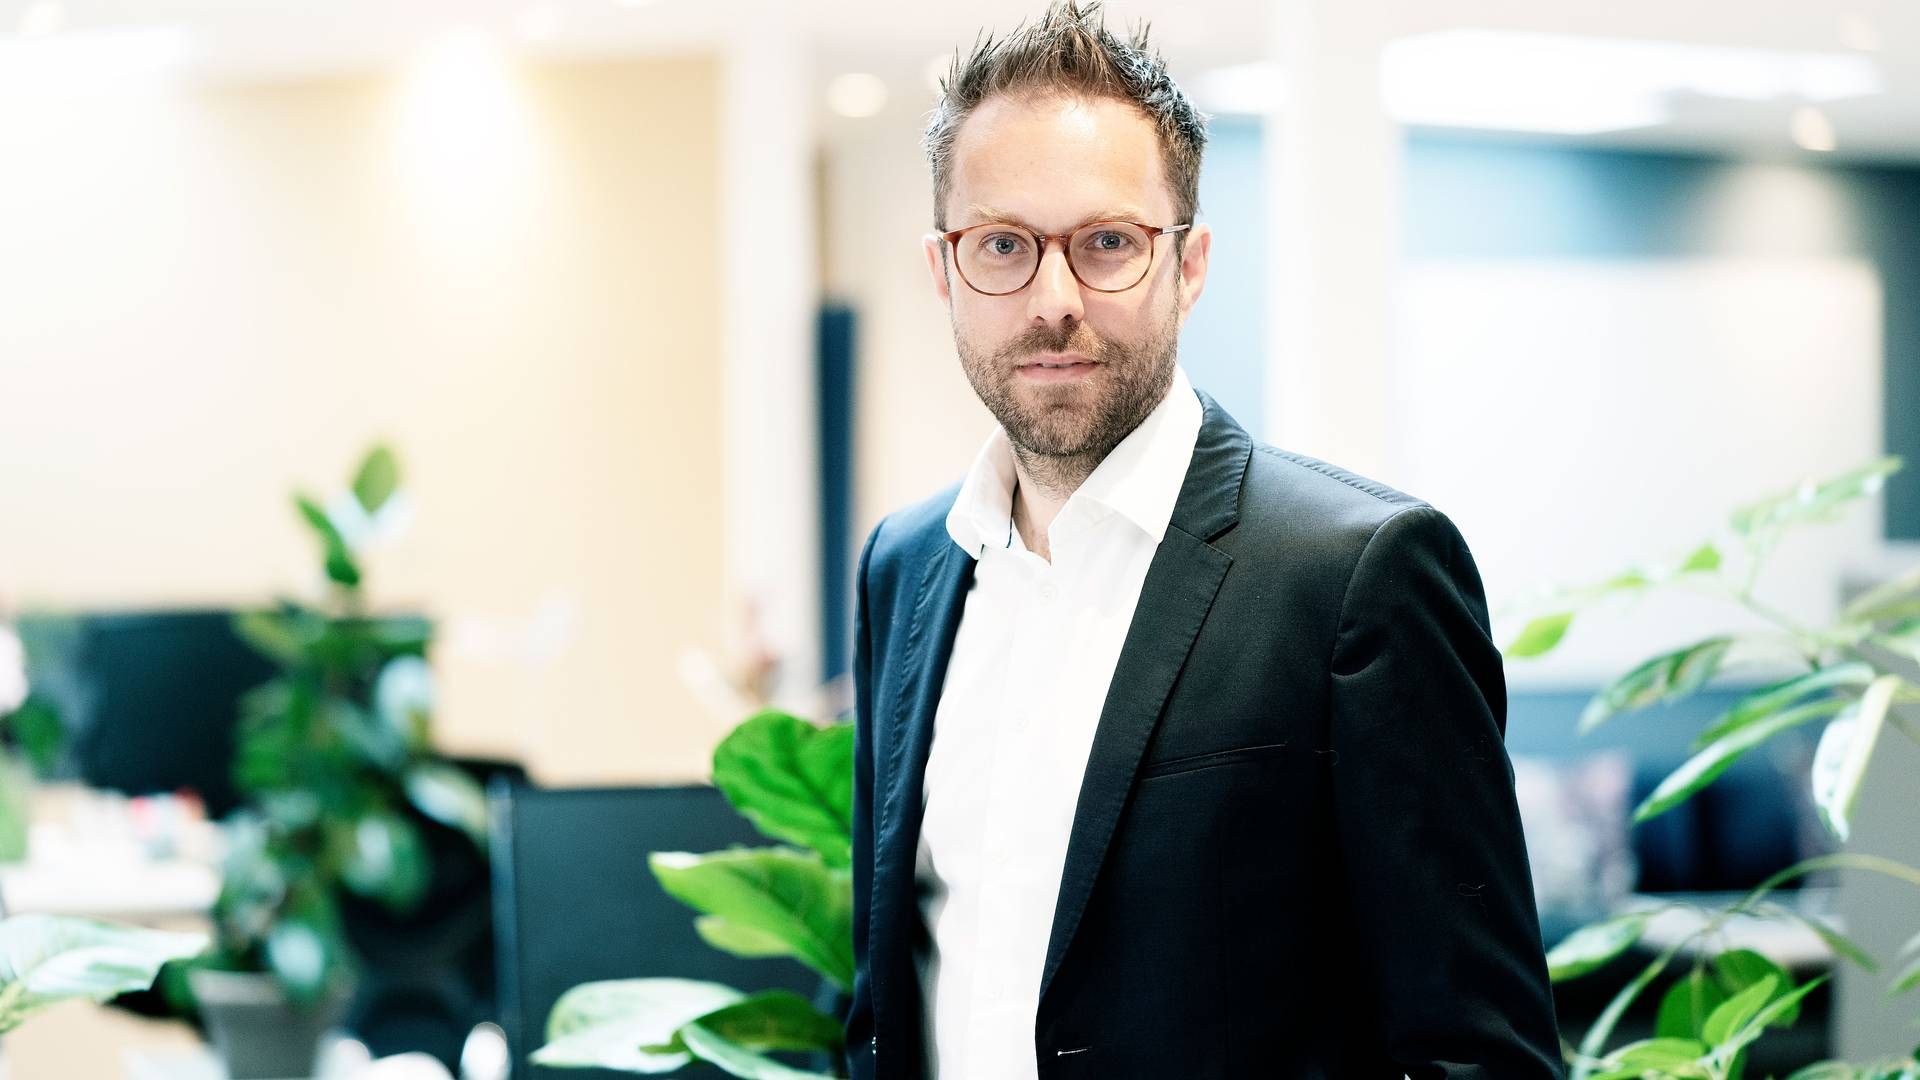 Thor Skov Jørgensen tiltrådte som ny adm. direktør i Coop den 19. juni. En af hans første opgaver bliver at føre koncernen gennem en større fyringsrunde. | Foto: Pr/coop